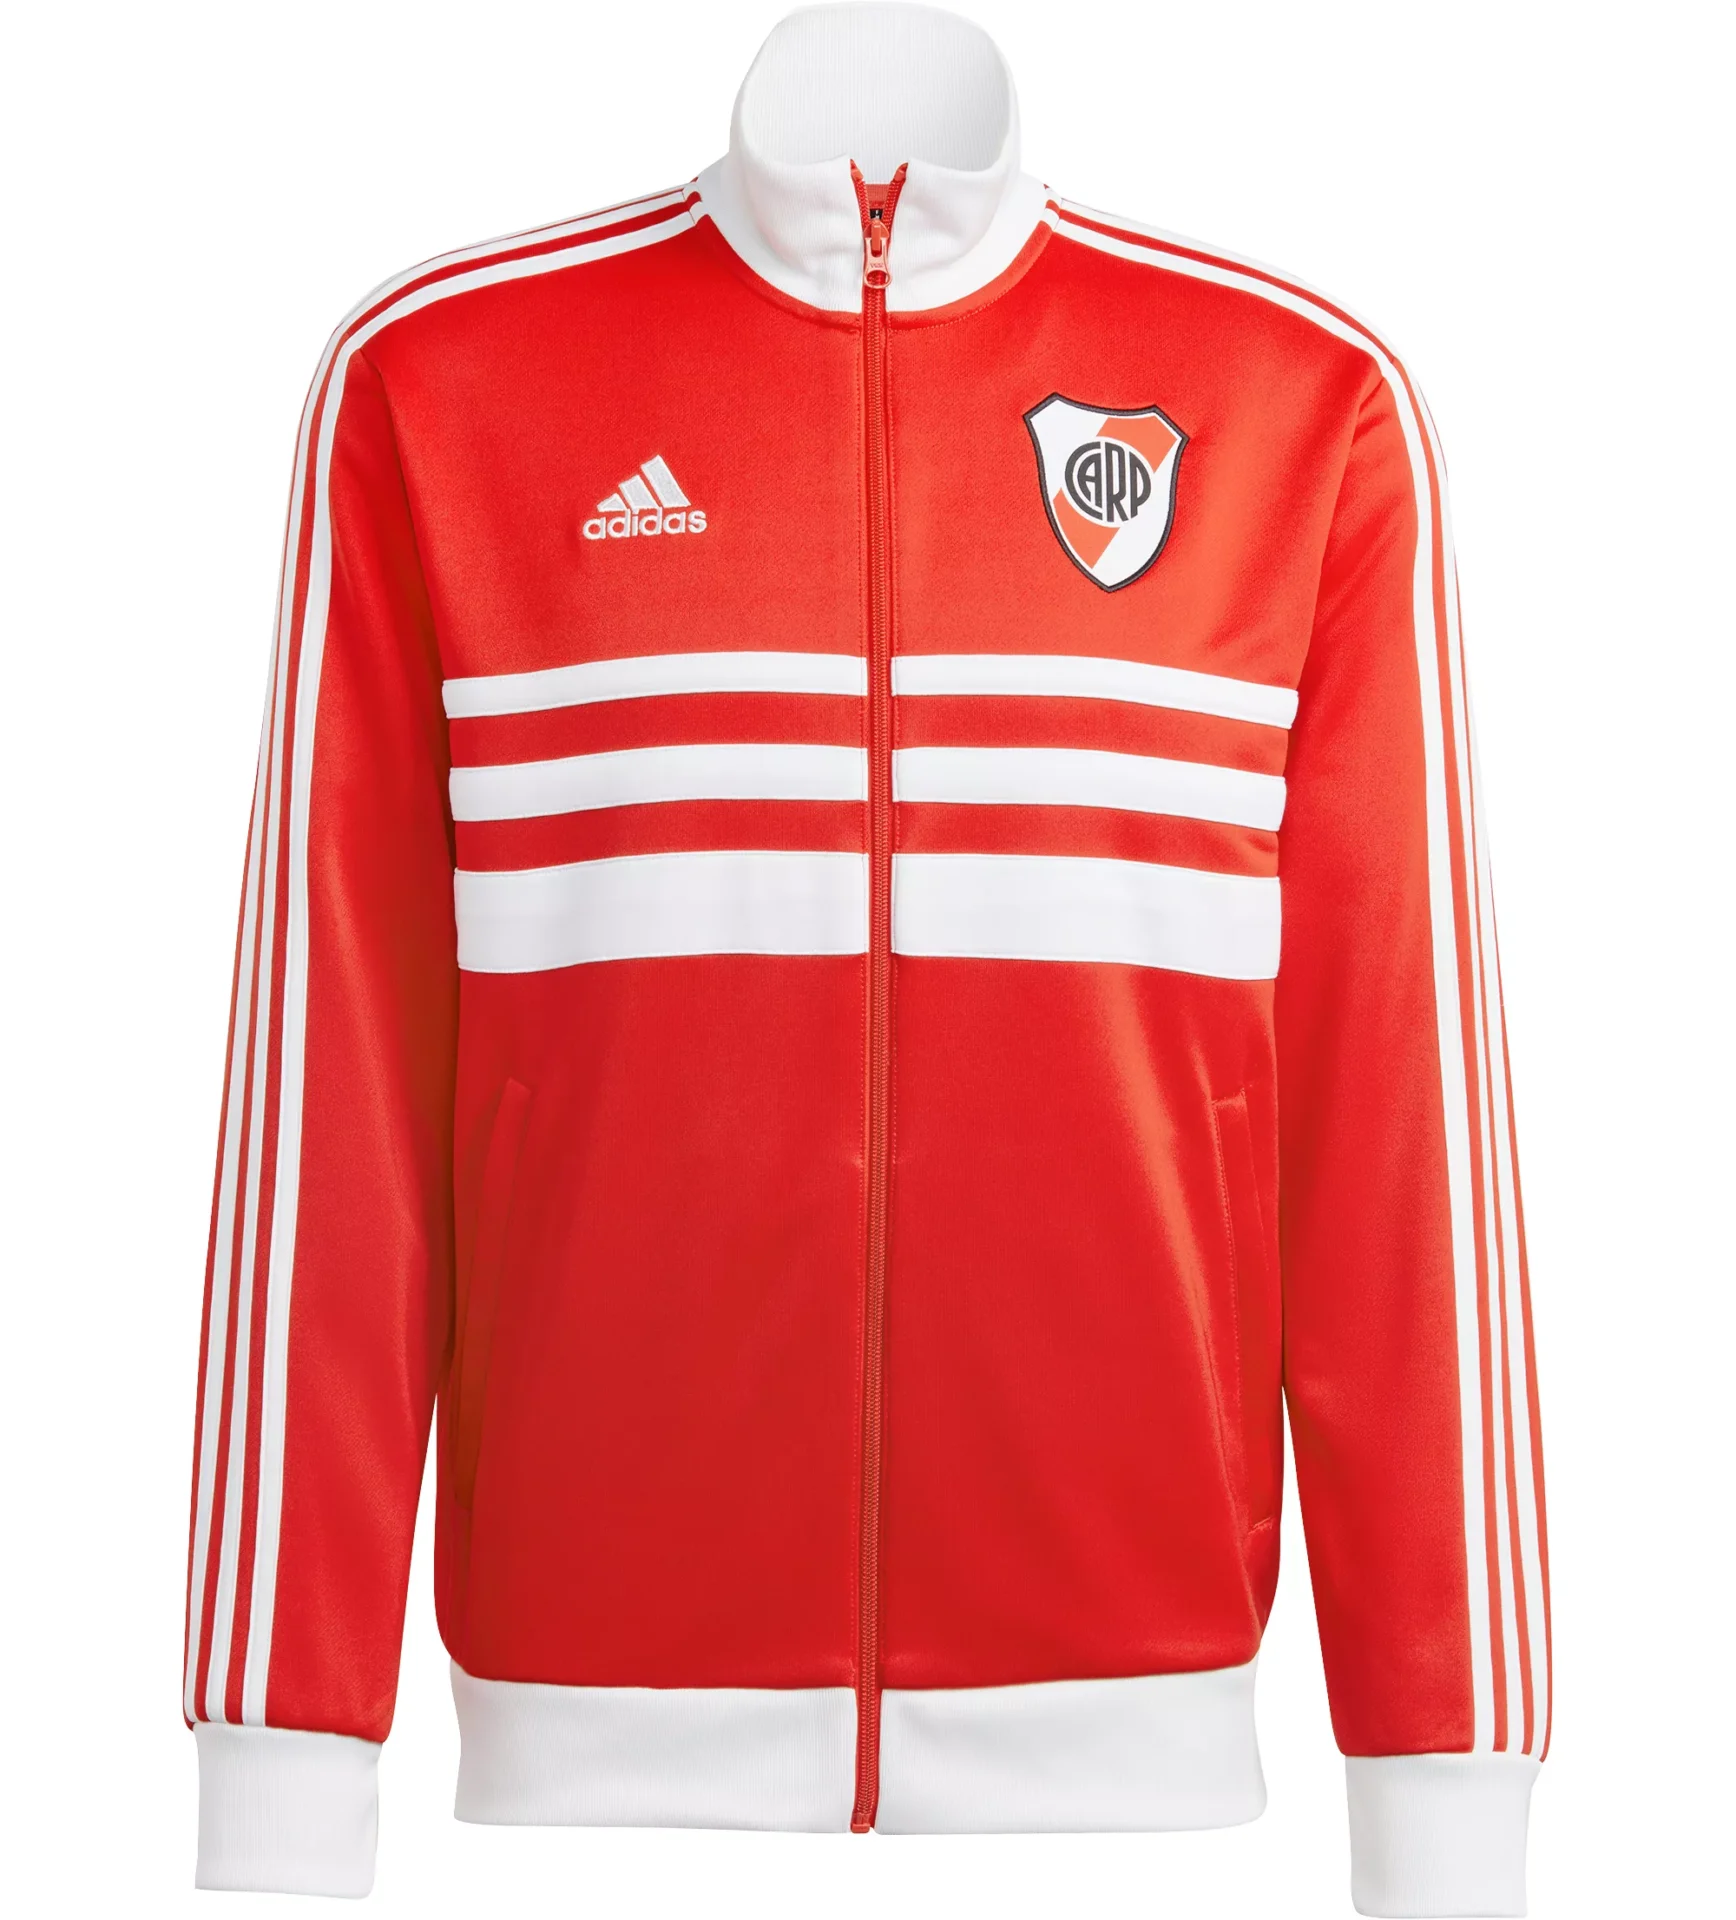 Ongunstig verbrand Mijnenveld adidas River Plate 3-Stripe Track Jacket - Red - Soccer Shop USA